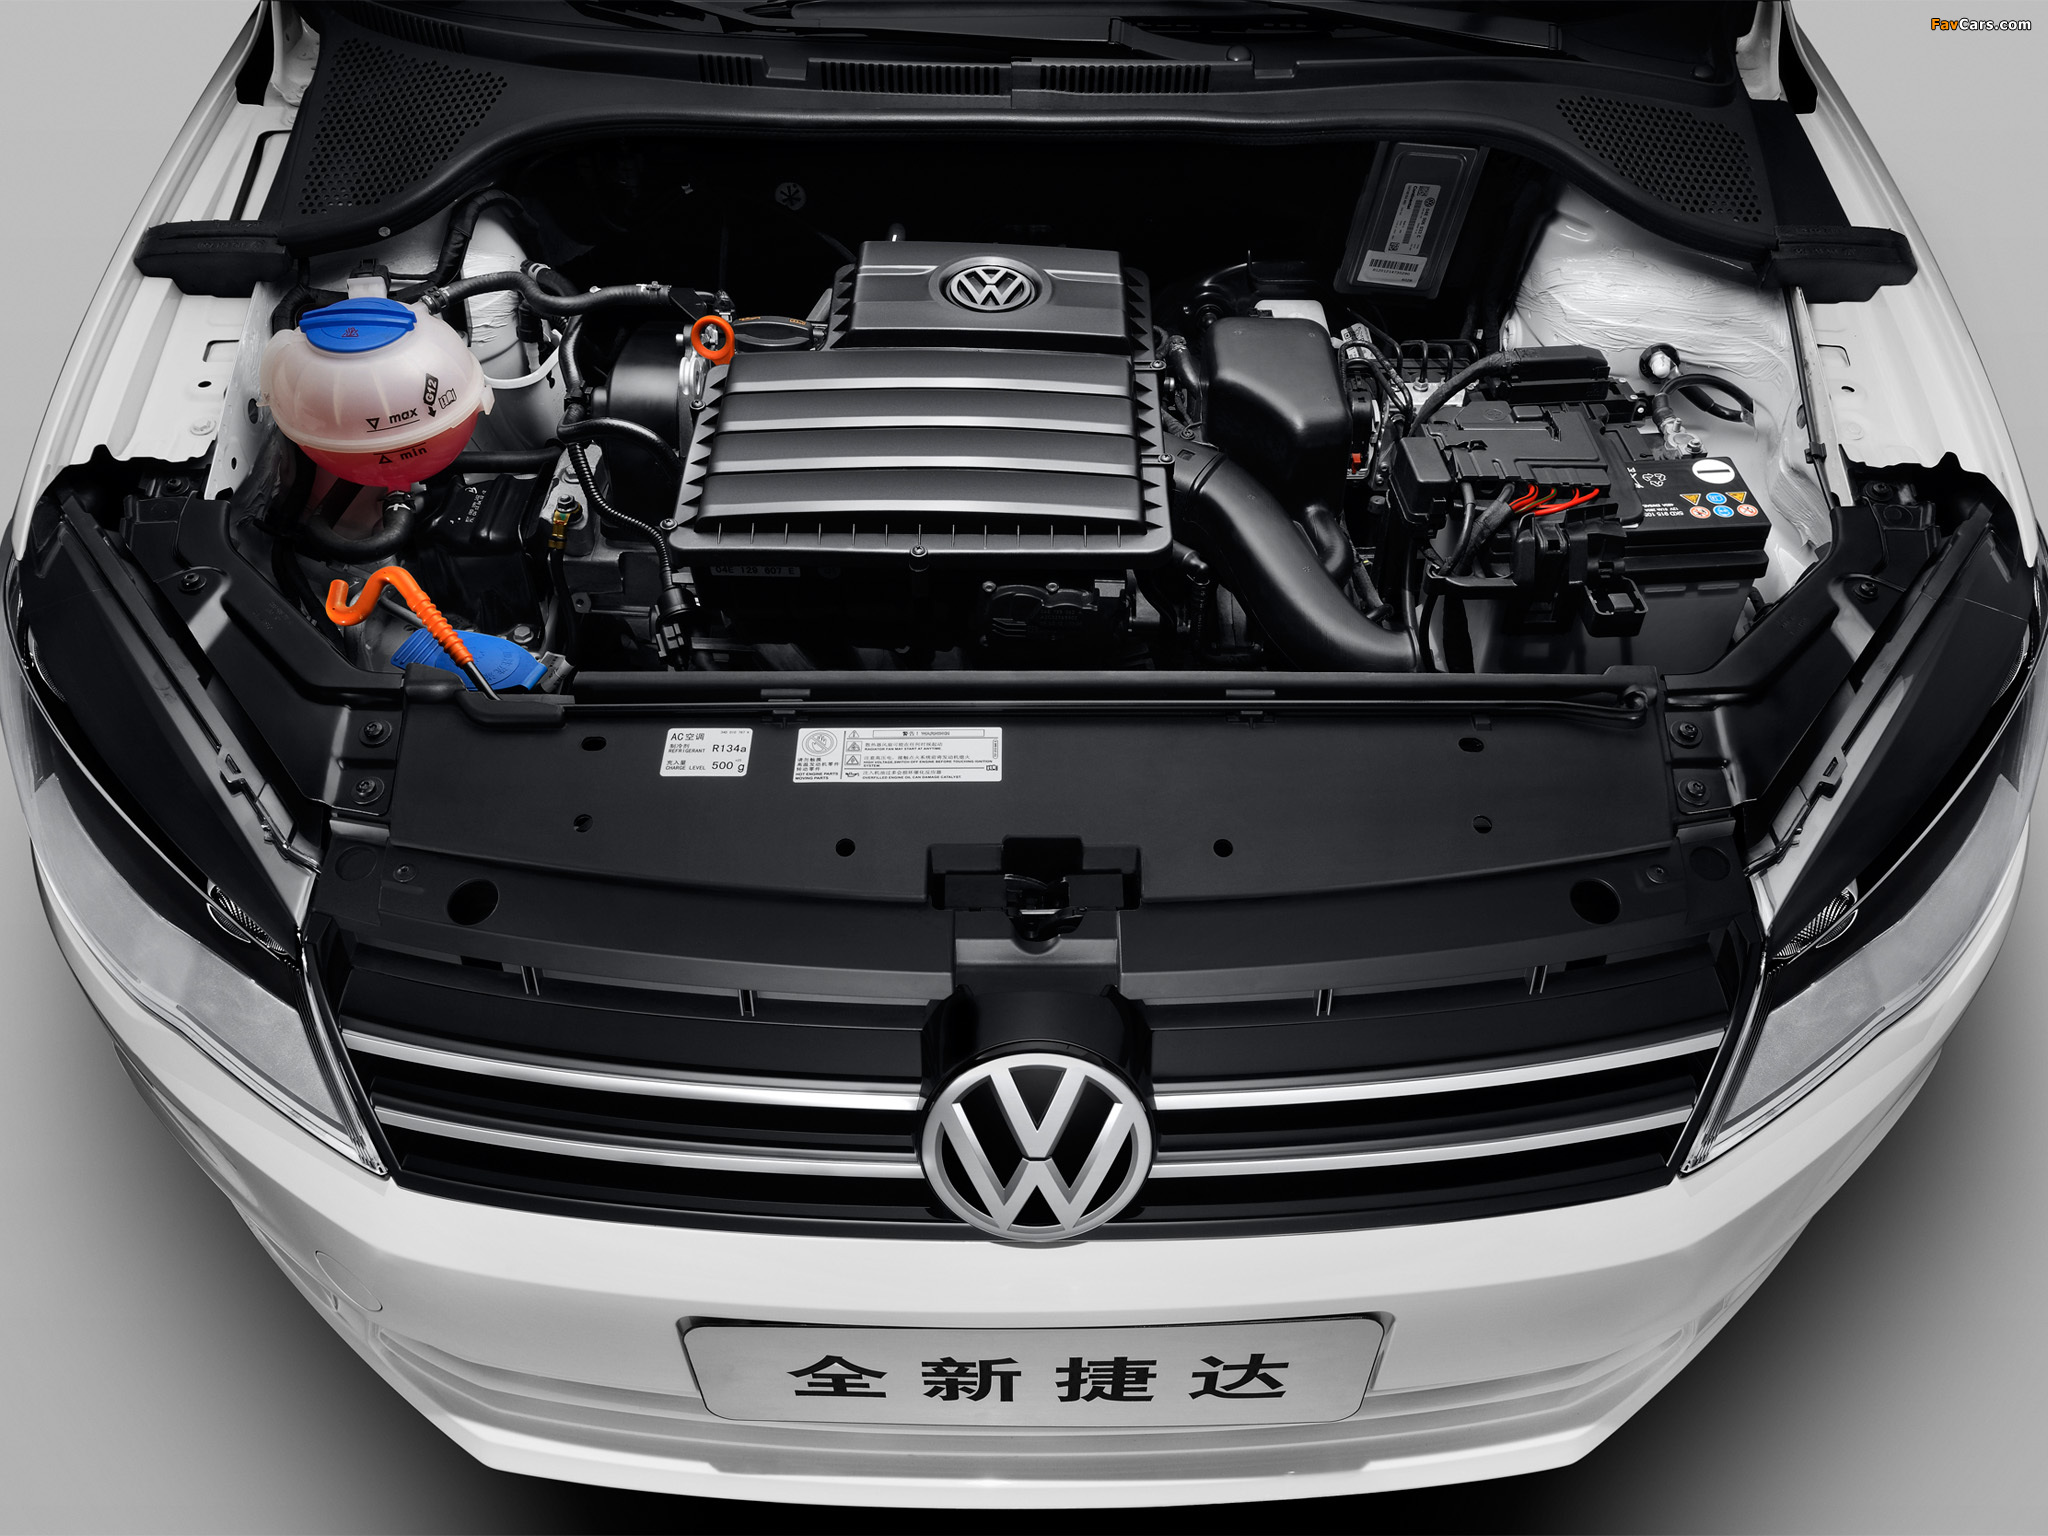 Volkswagen Jetta CN-spec 2013 pictures (2048 x 1536)